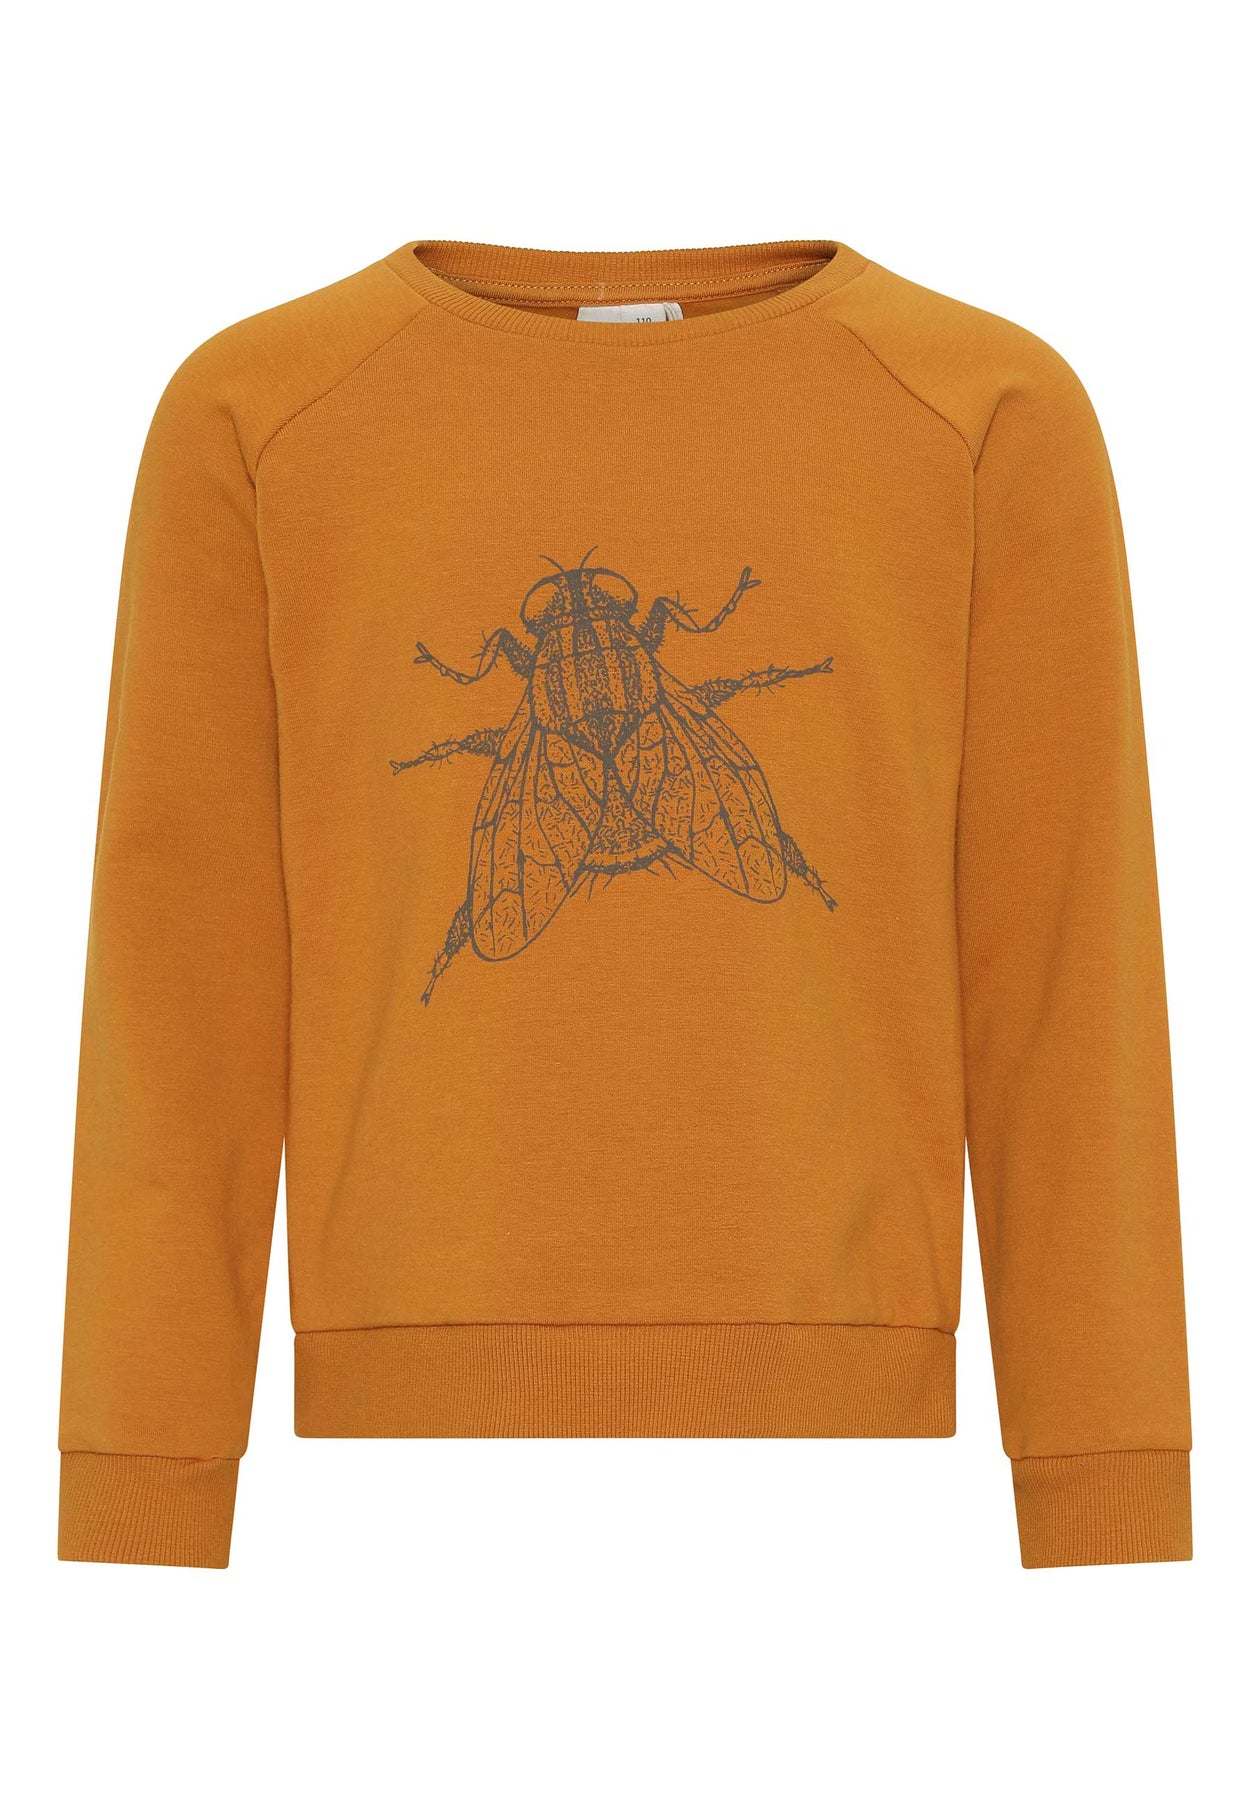 GROBUND Calle sweatshirten mini - den i gylden med flue